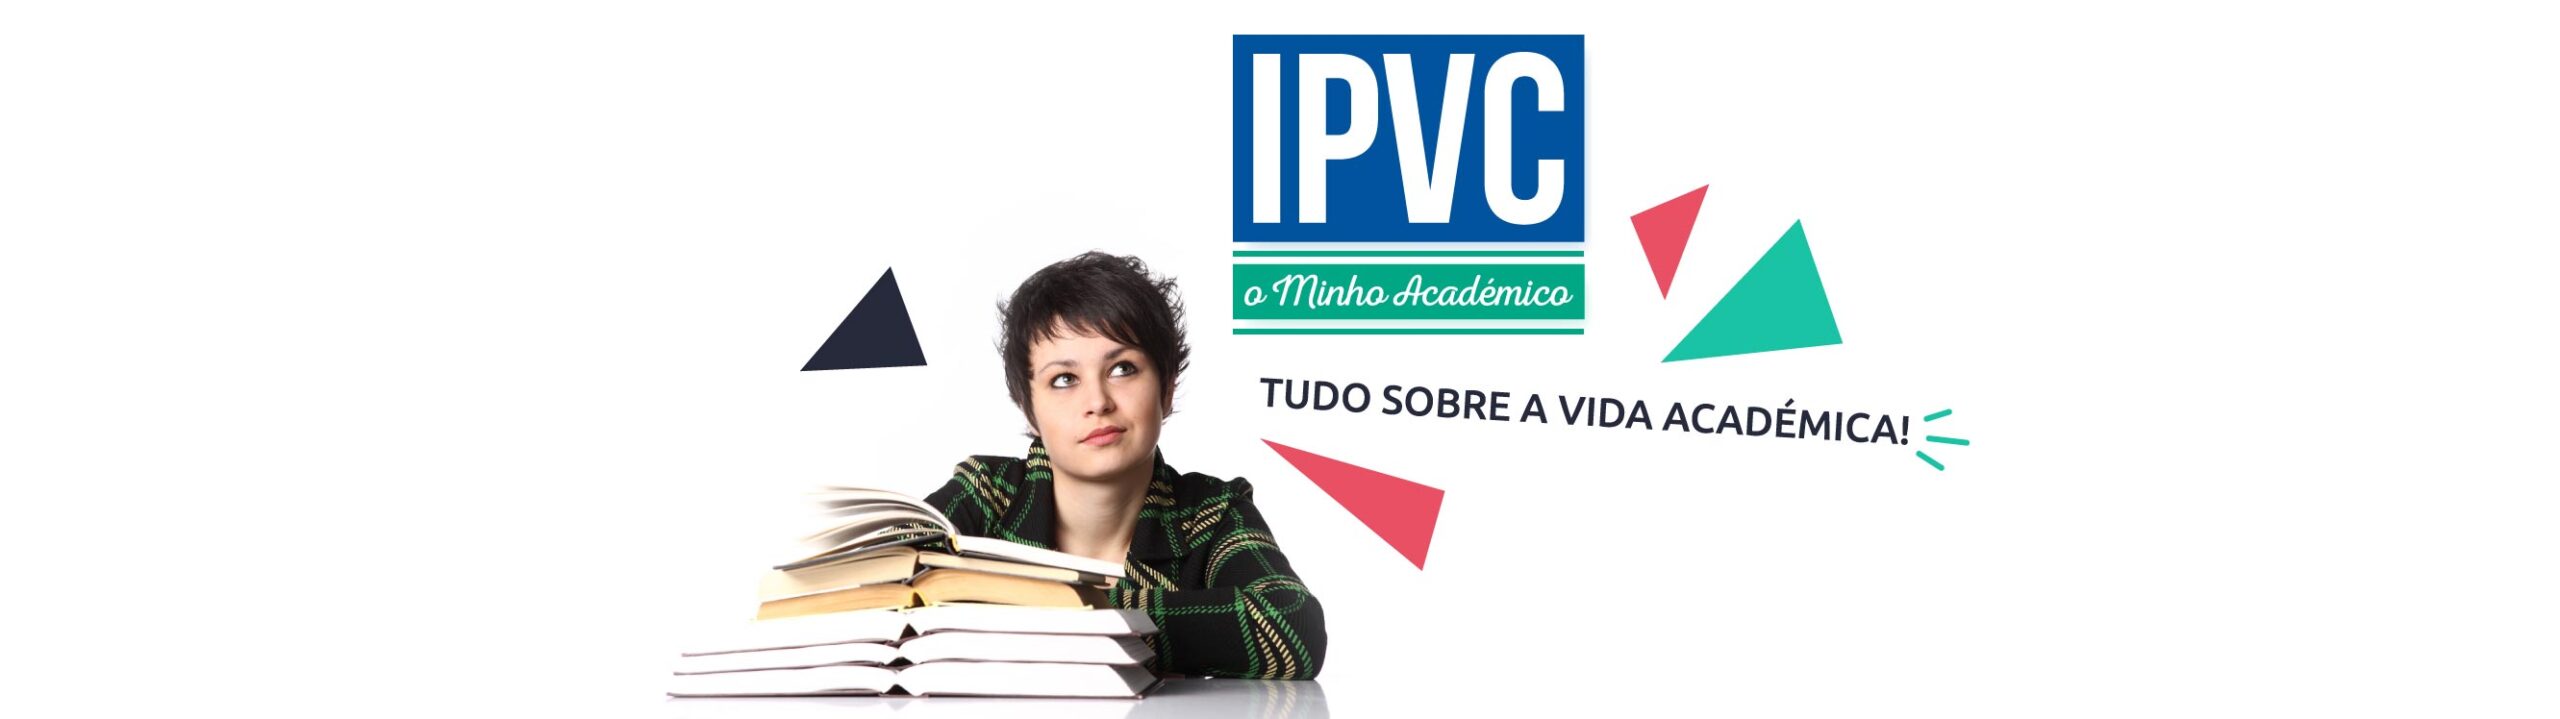 IPVC – O Minho Académico (Ed. 035)